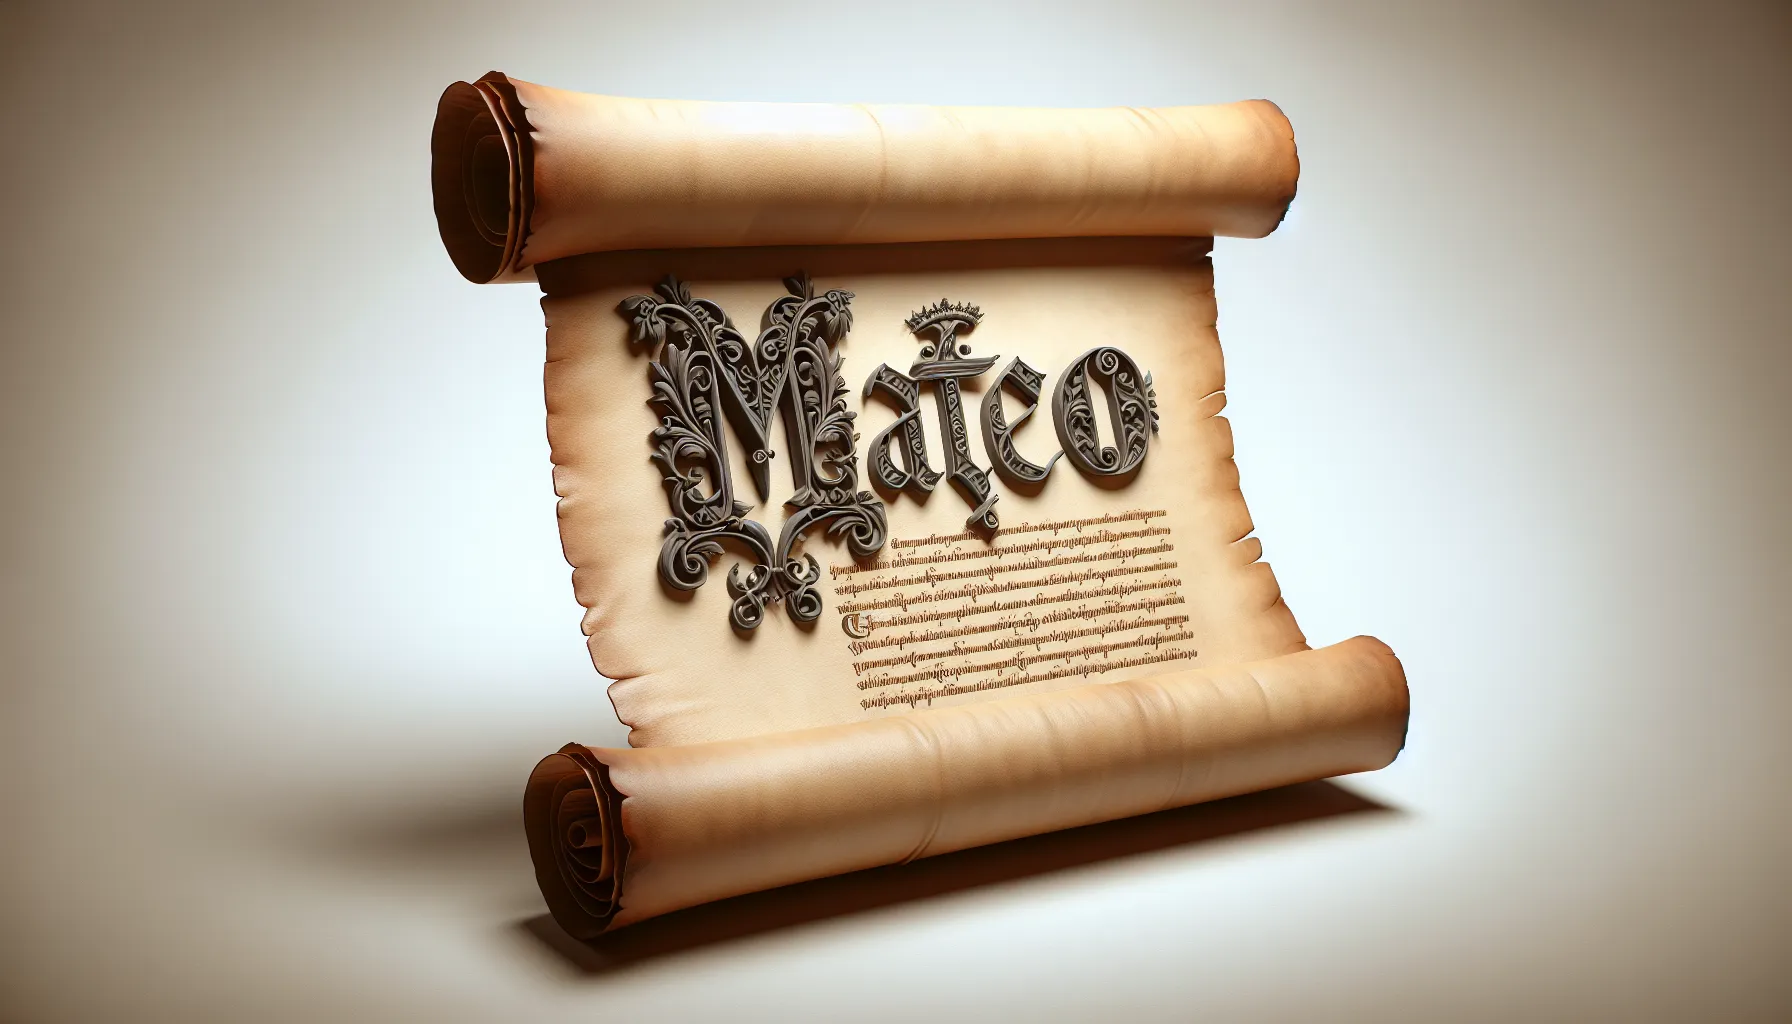 Imagen de un pergamino antiguo con el nombre de Mateo escrito en letras ornamentadas, representando la autoría del Evangelio y su importancia histórica y religiosa.